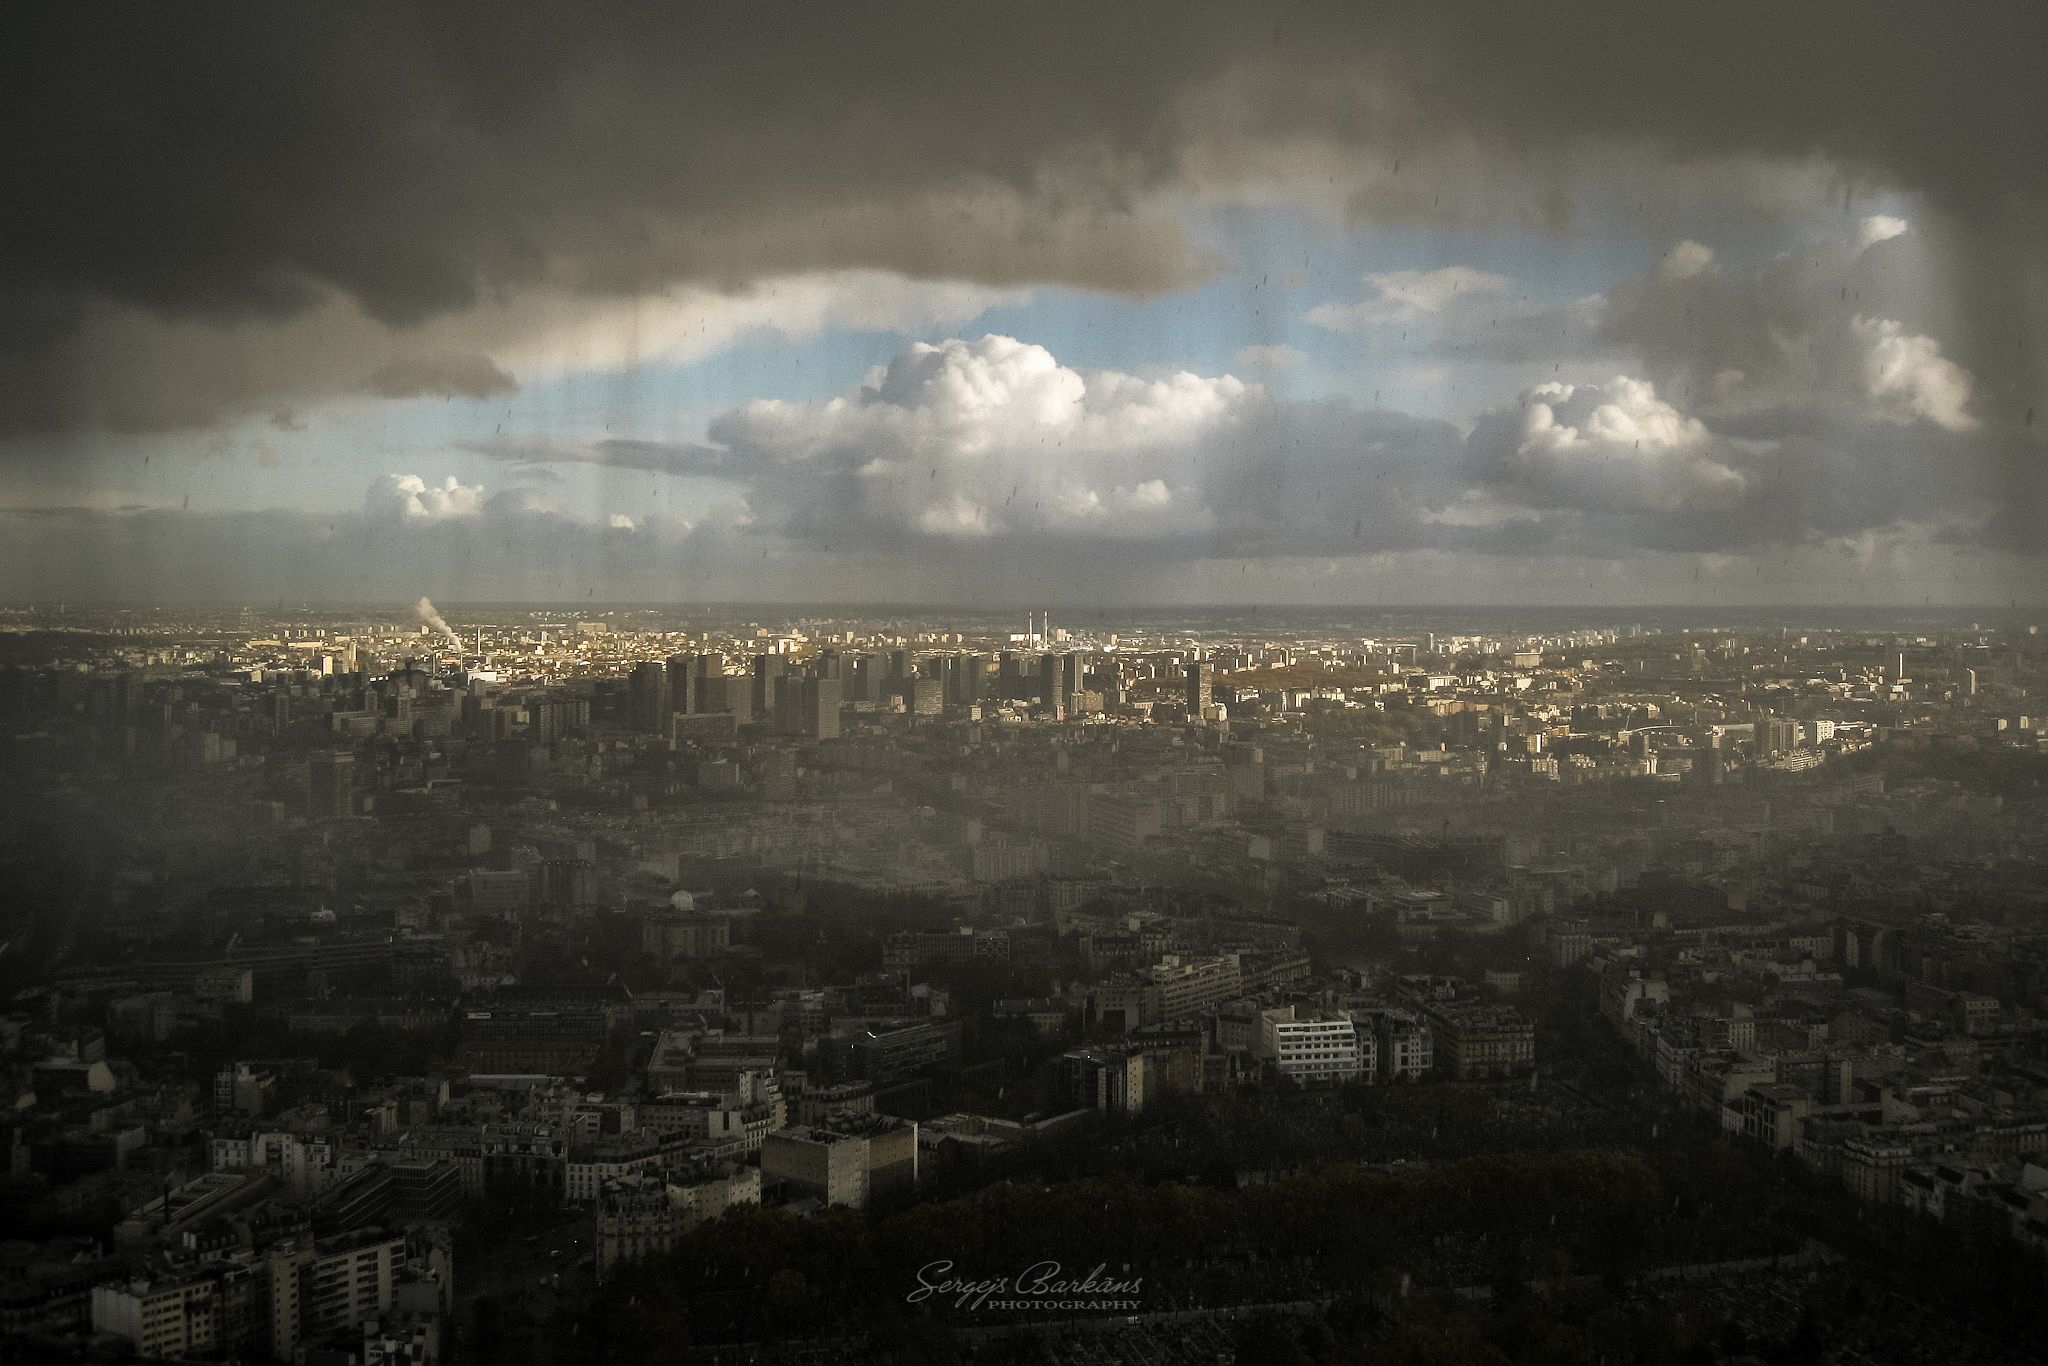 #paris #france #weather #rain #hail, Sergejs Barkans